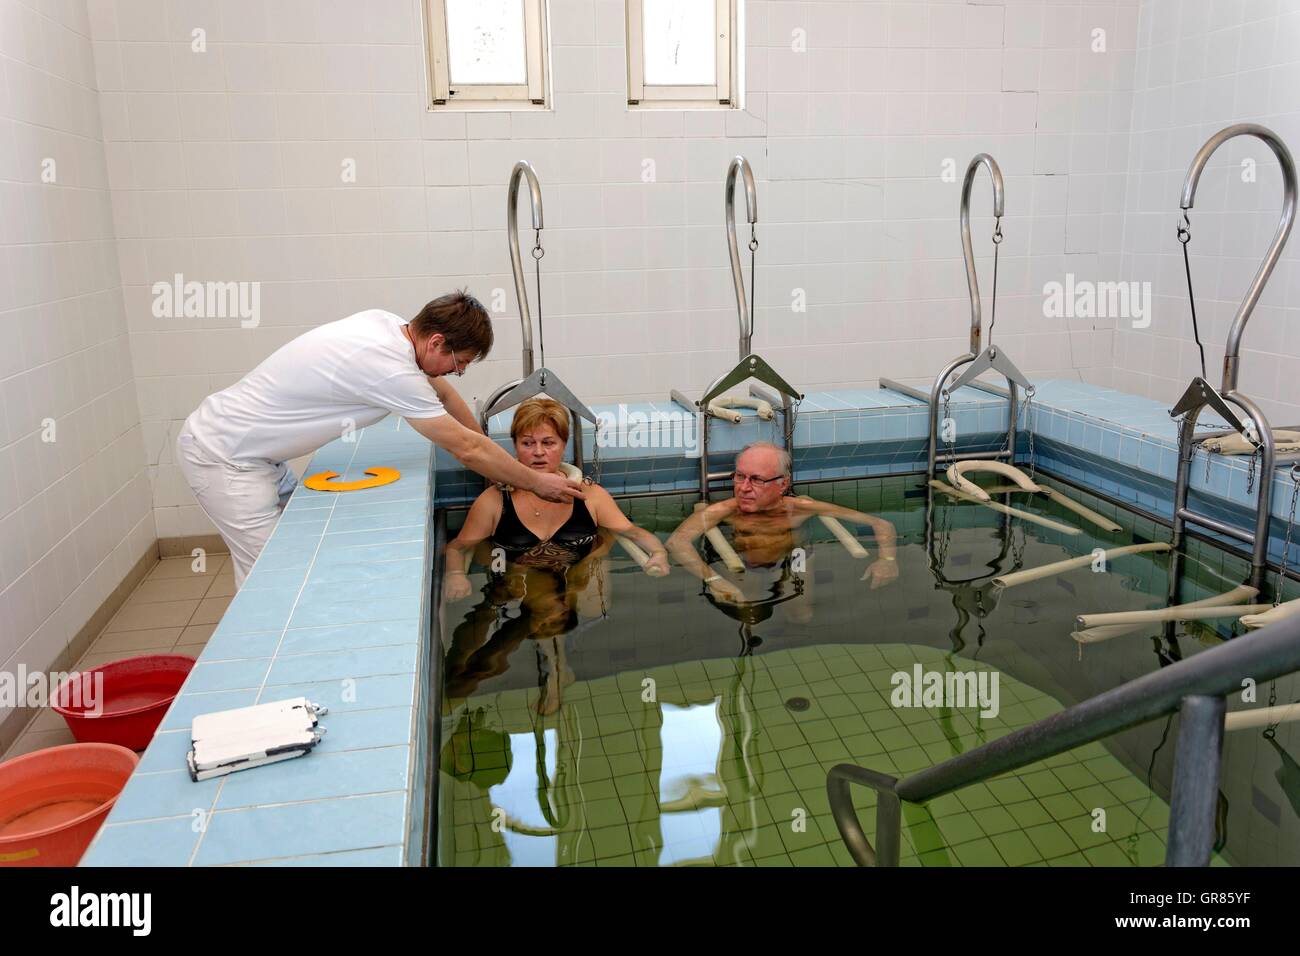 Senior Citizen Pareja con terapeutas en peso en el baño Spa Cegled Foto de stock